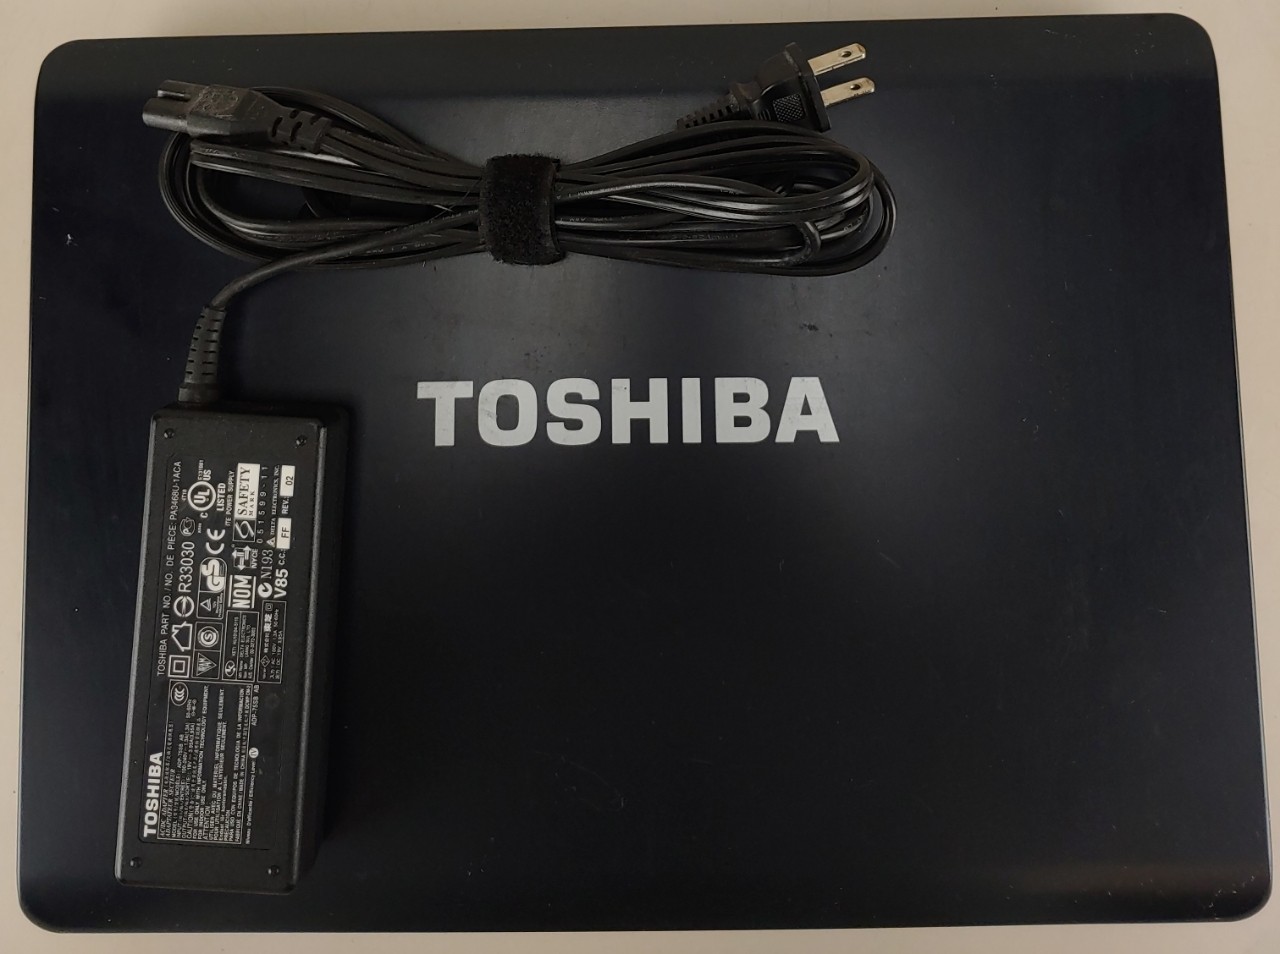 Toshiba Satellite Turion 64 x 2 4 Mb 1.80 Mhz 